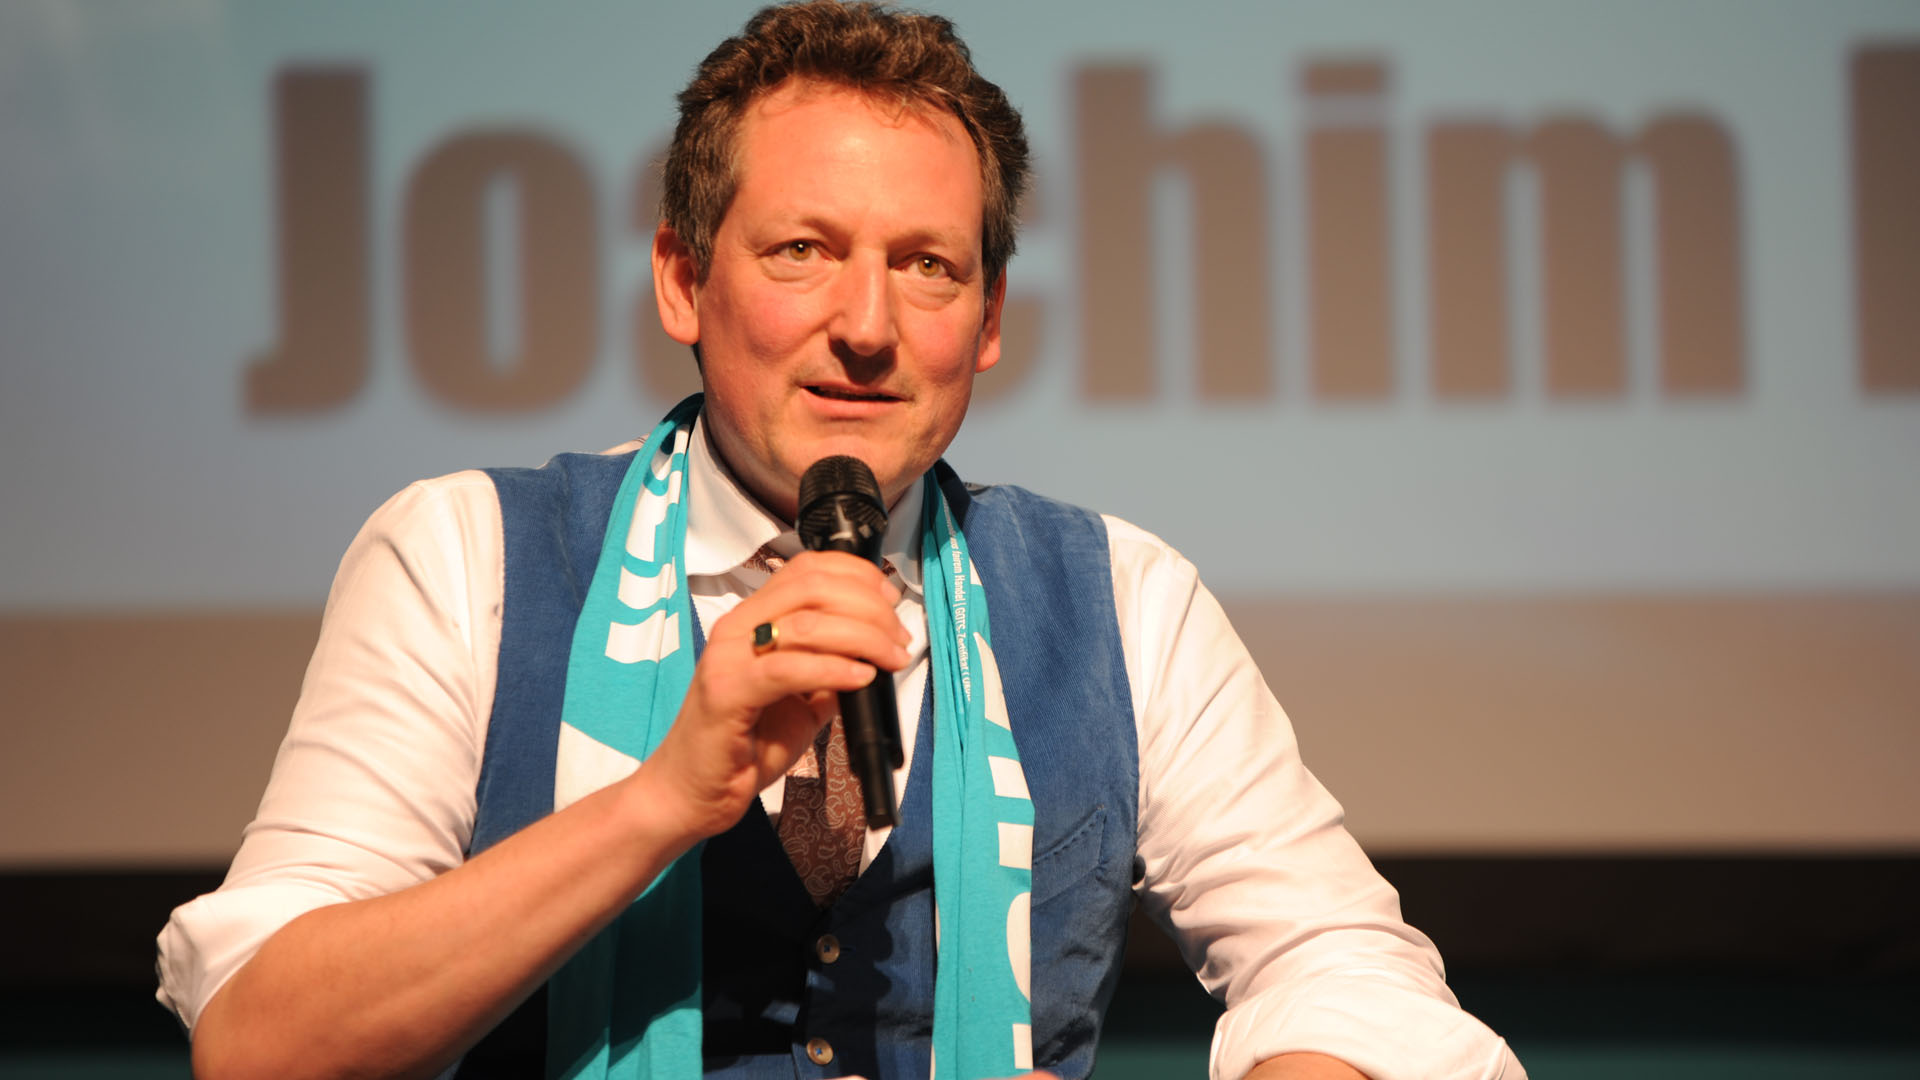 Der Kabarettist Eckart von Hirschhausen trat bei der Diskussion als „komödiantischer Störer“ auf